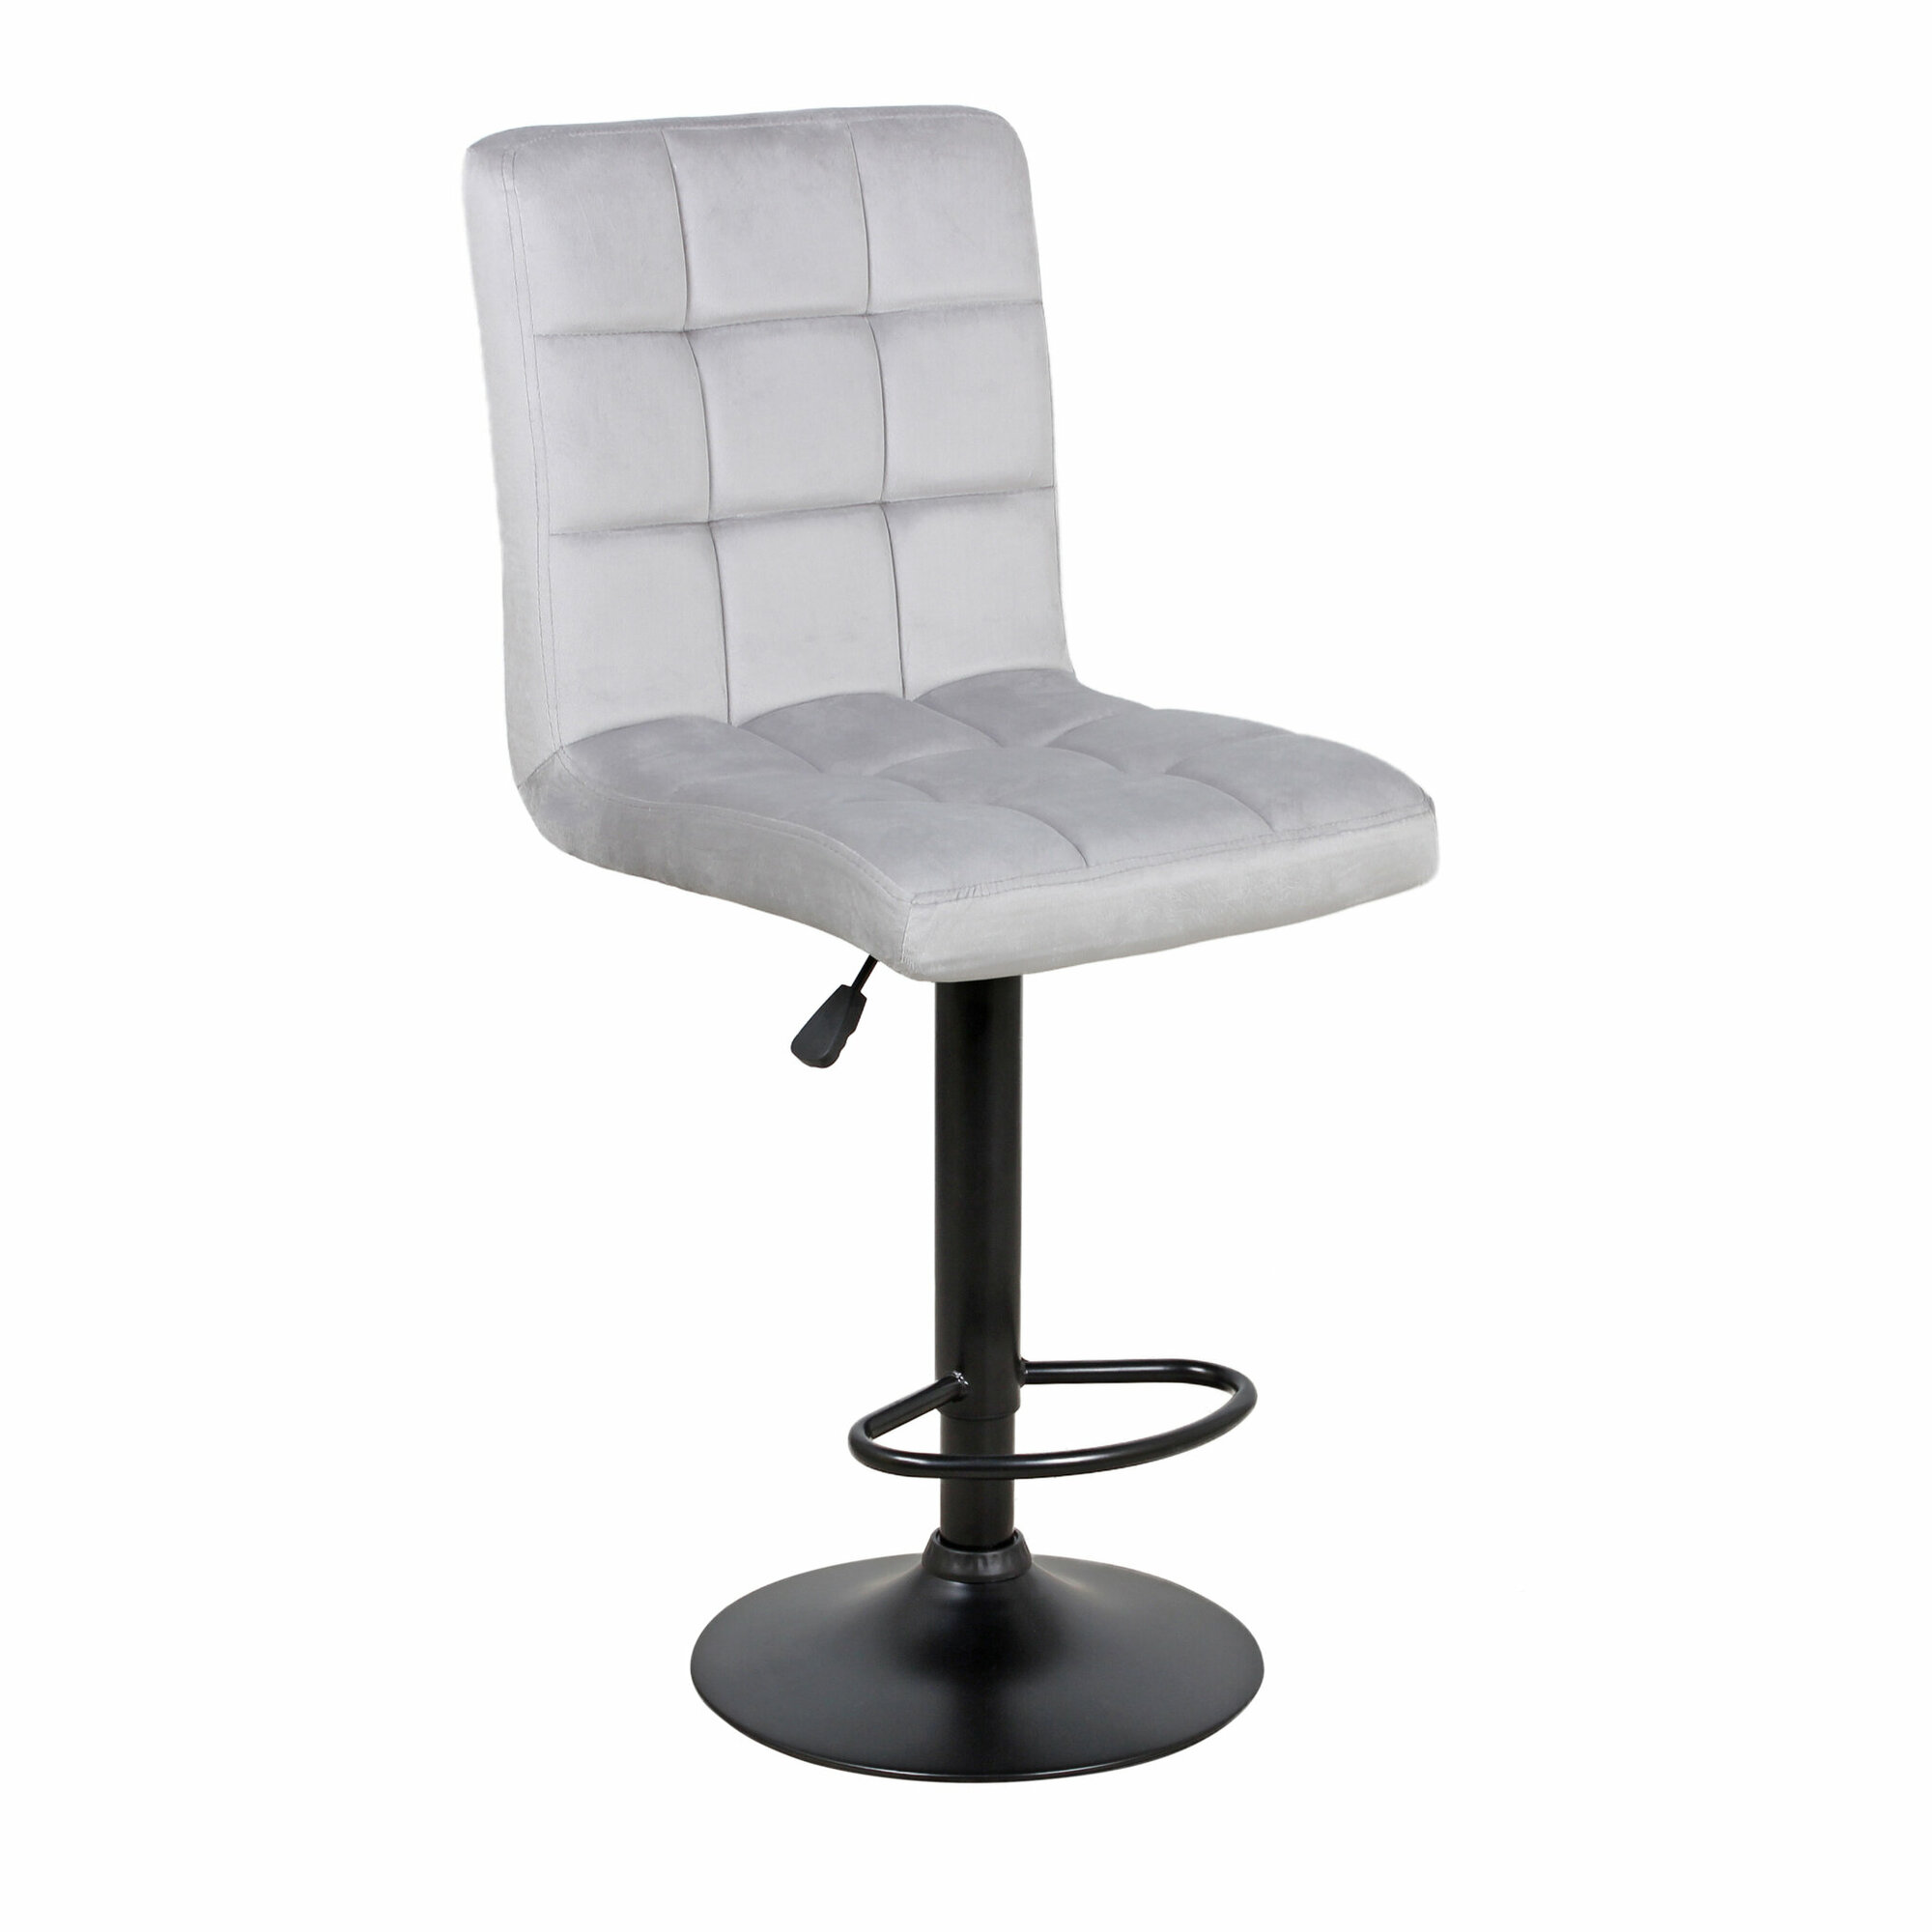 Стул барный ecoline Паркер WX-2517 цвет сиденья светло-серый, цвет основания черный